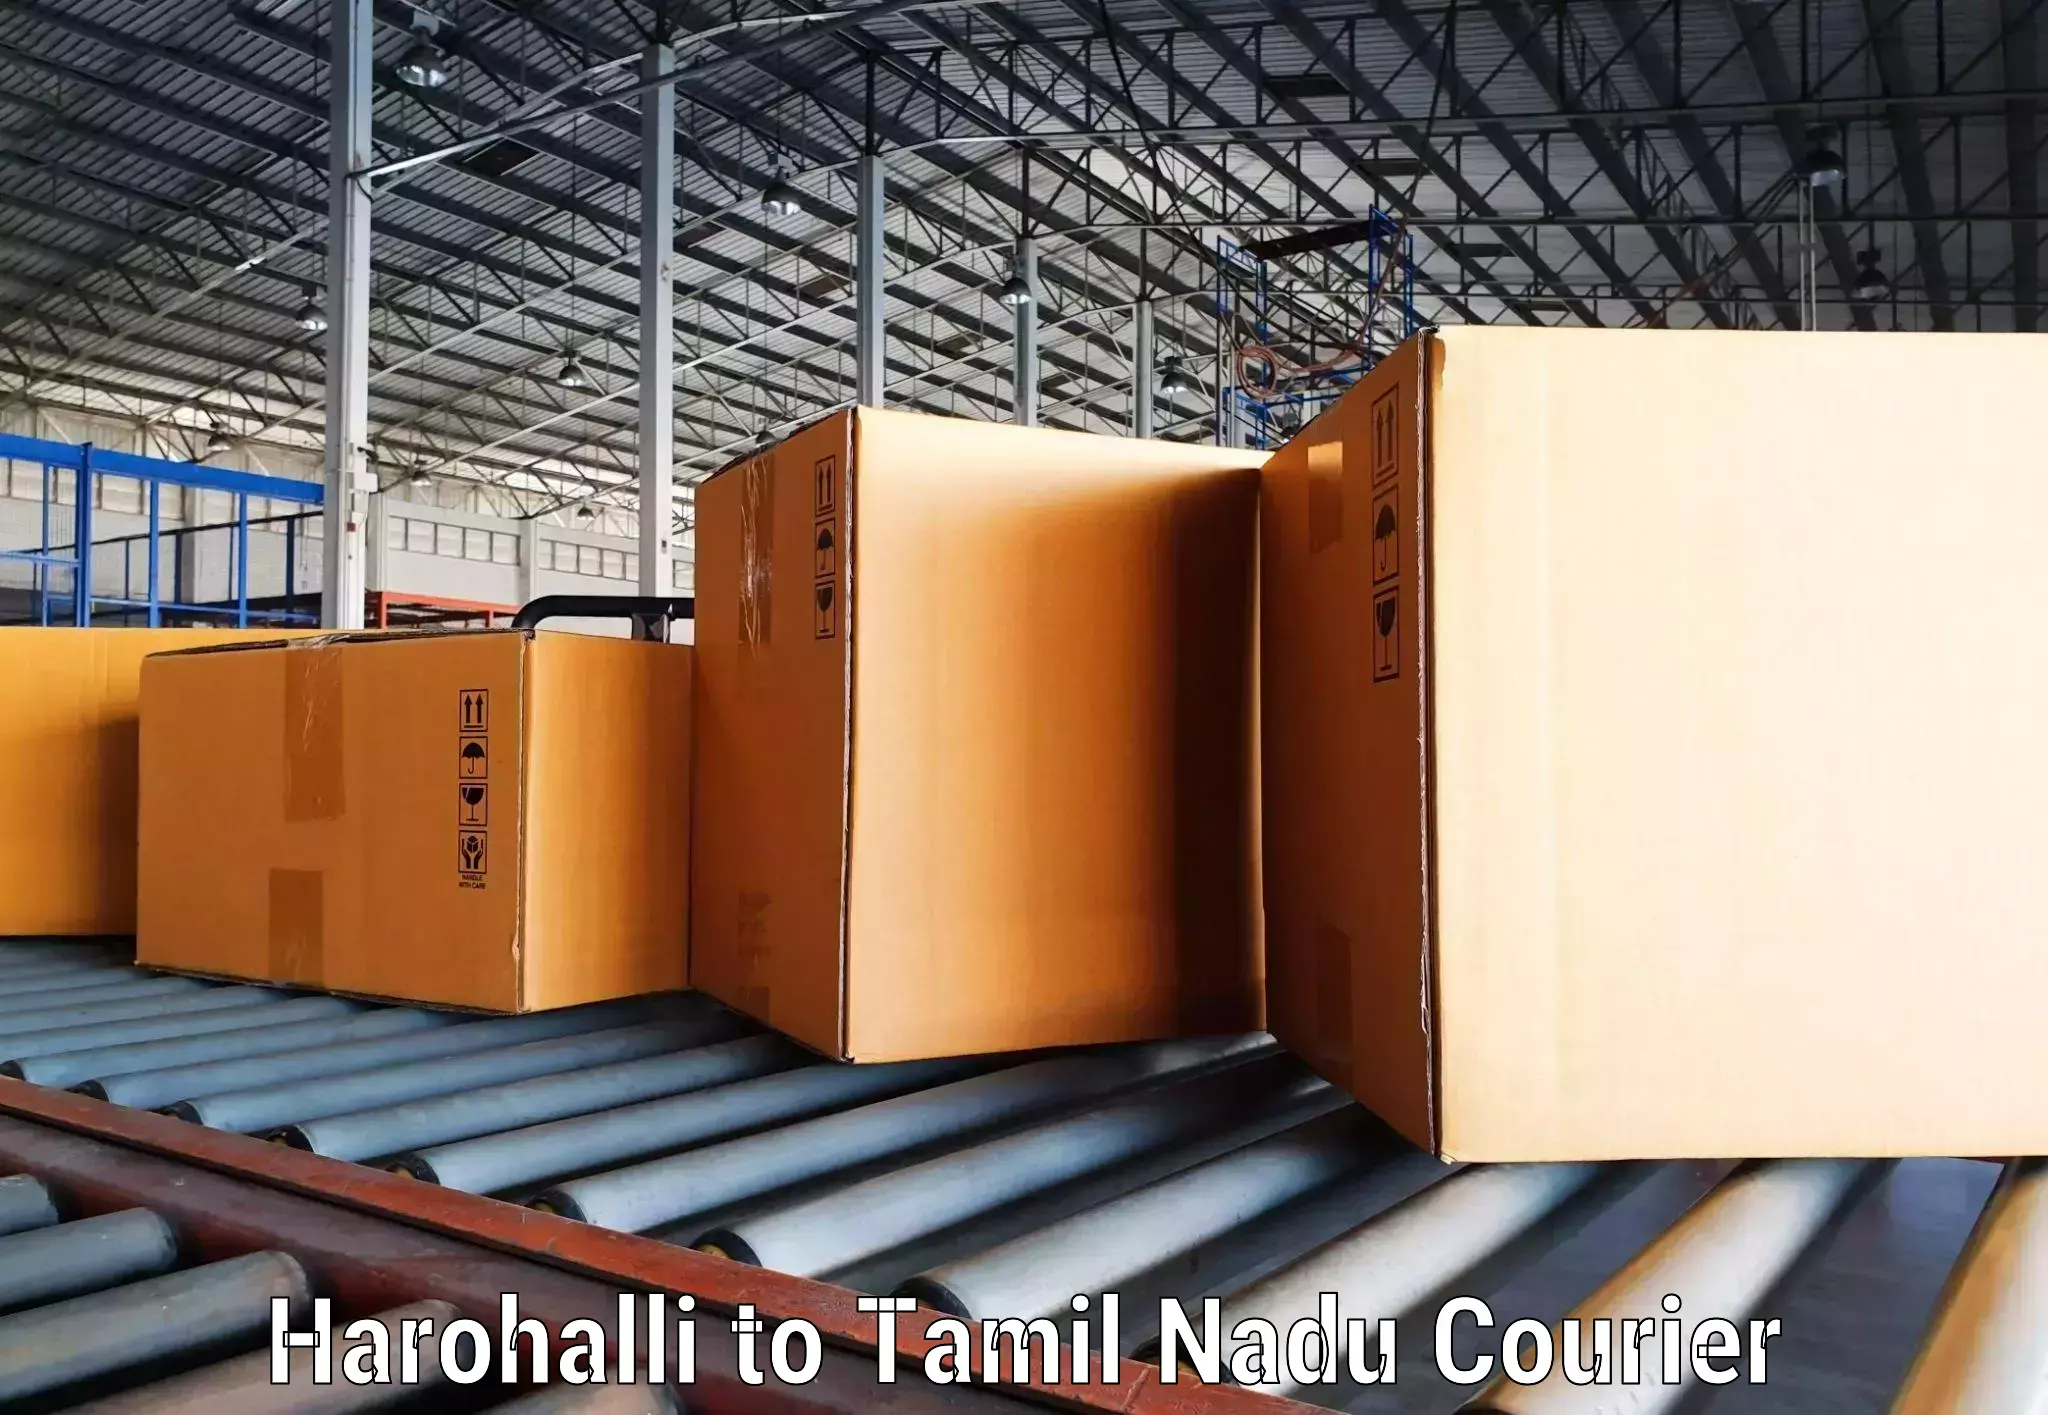 Courier service innovation in Harohalli to Kodaikanal